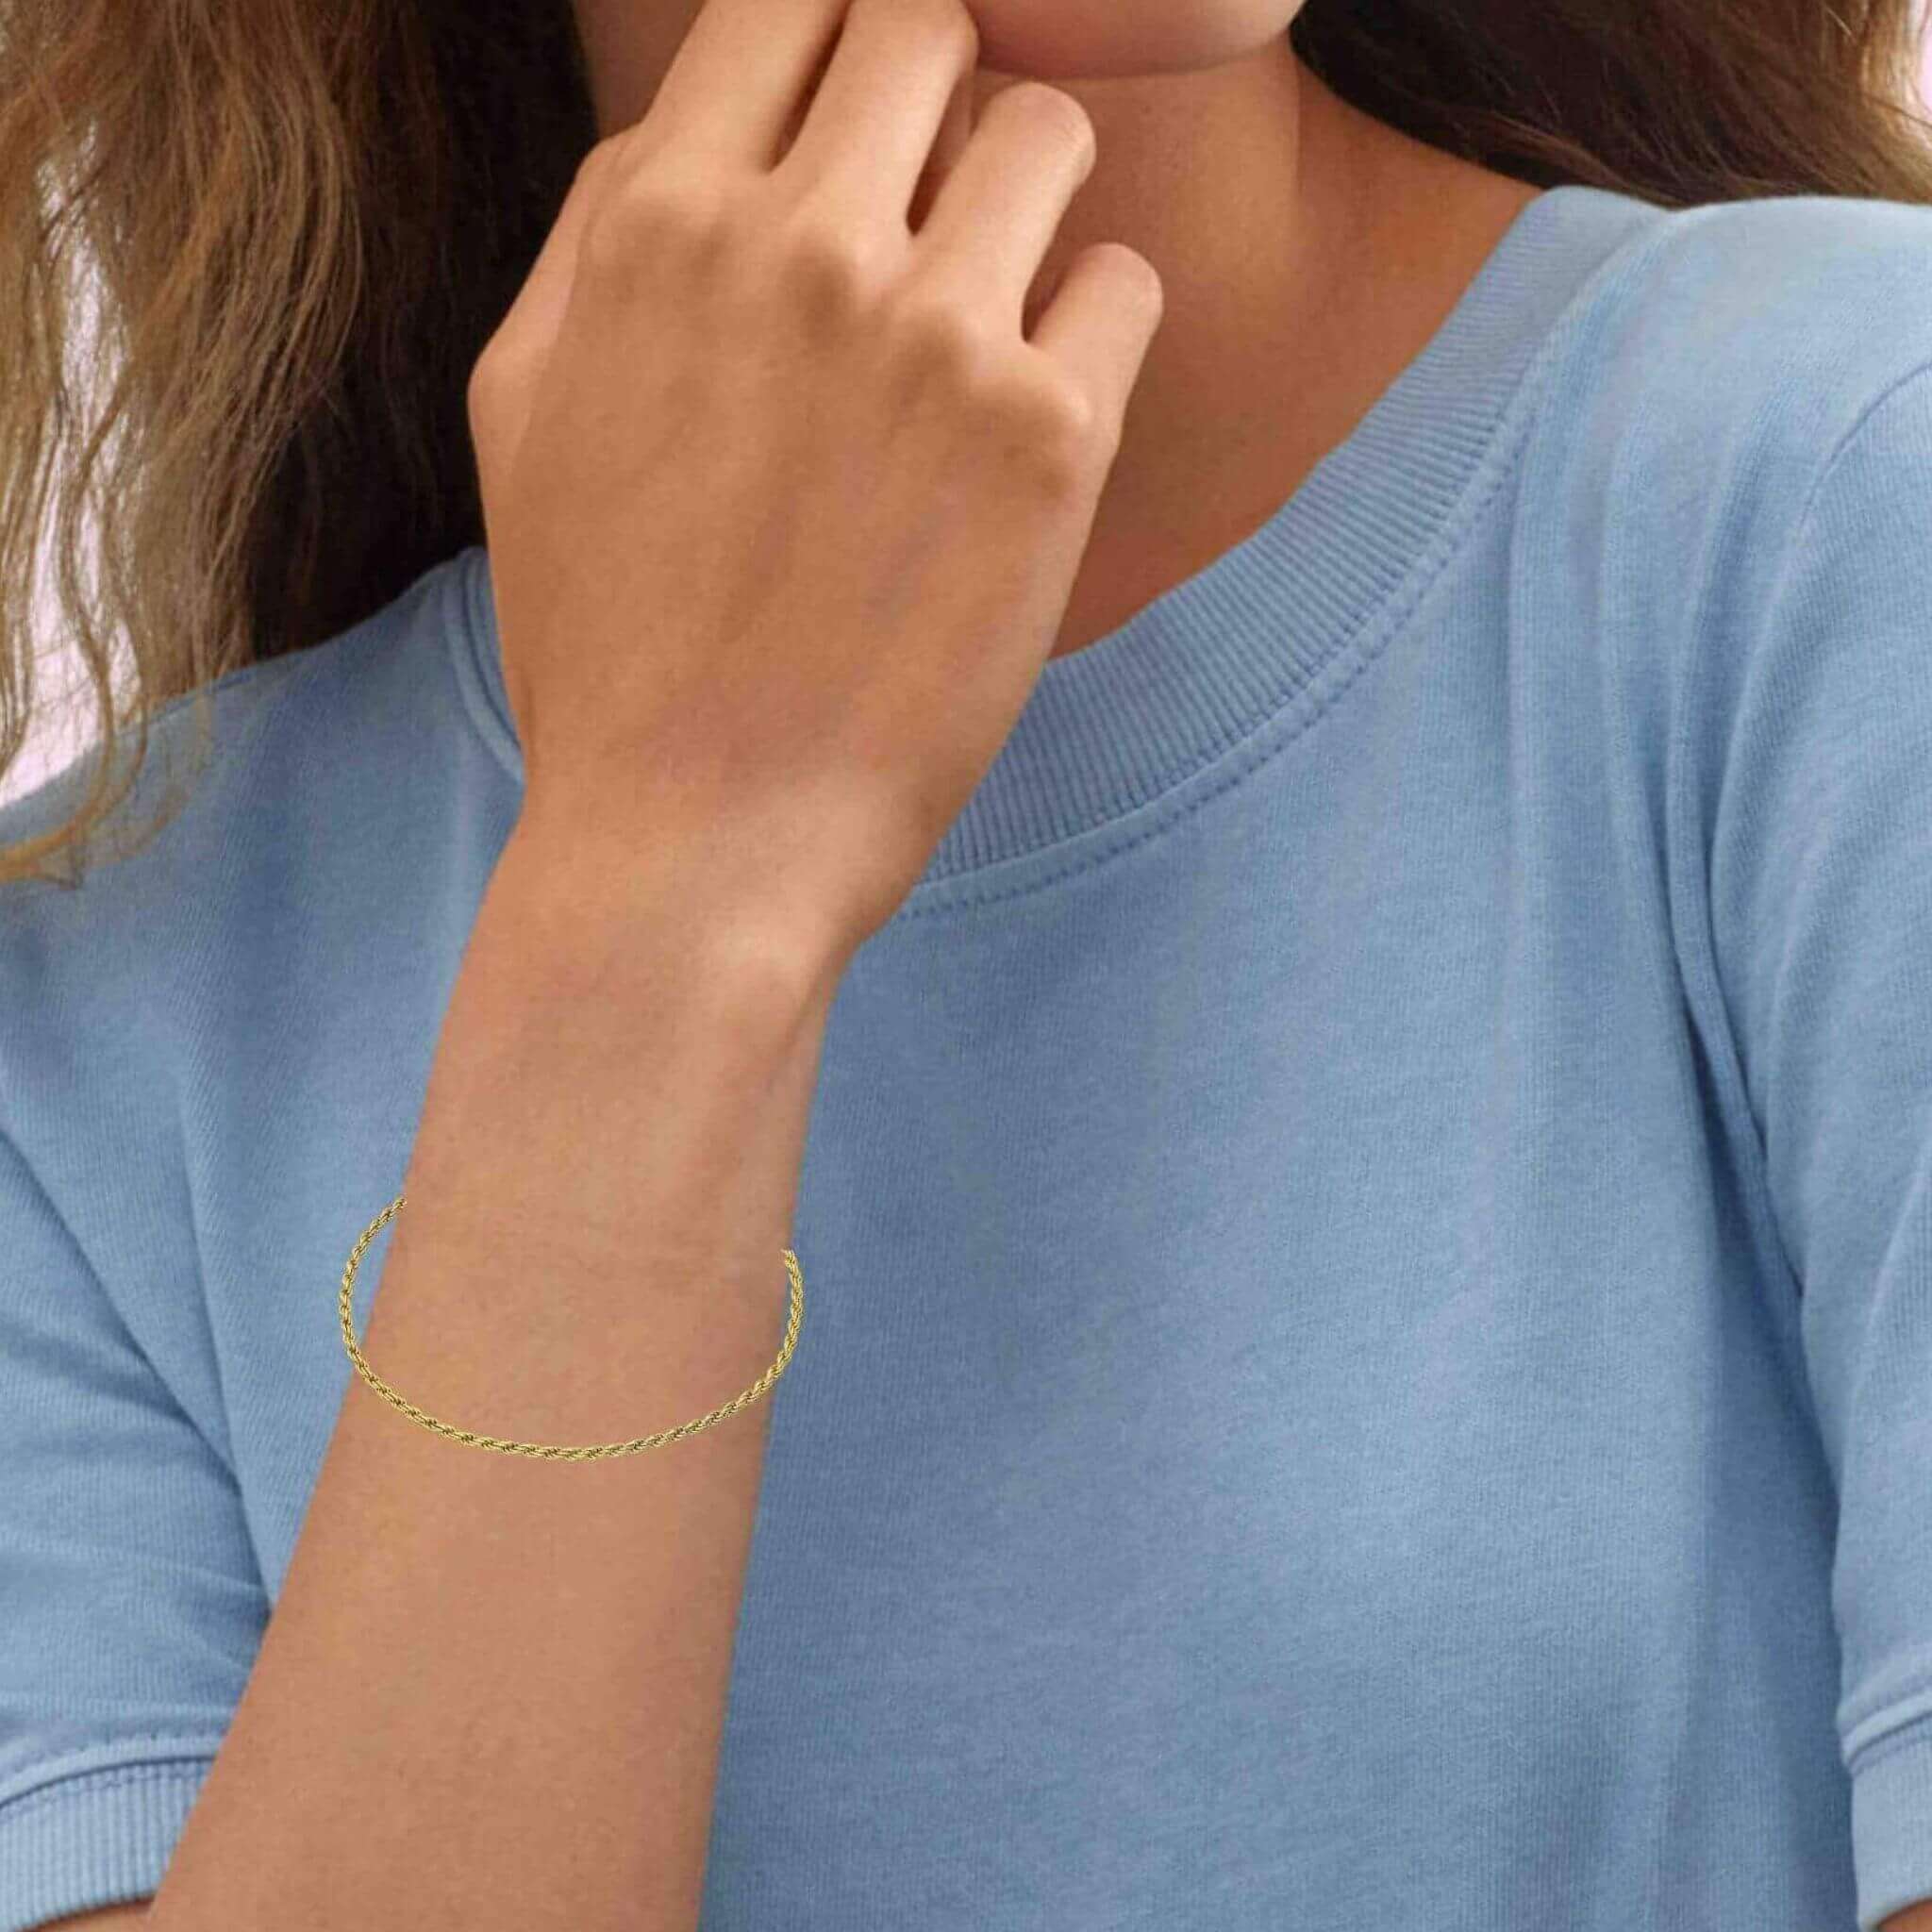 MADEWELL White Bracelet Length Full-Sleeve Top Small Size | eBay